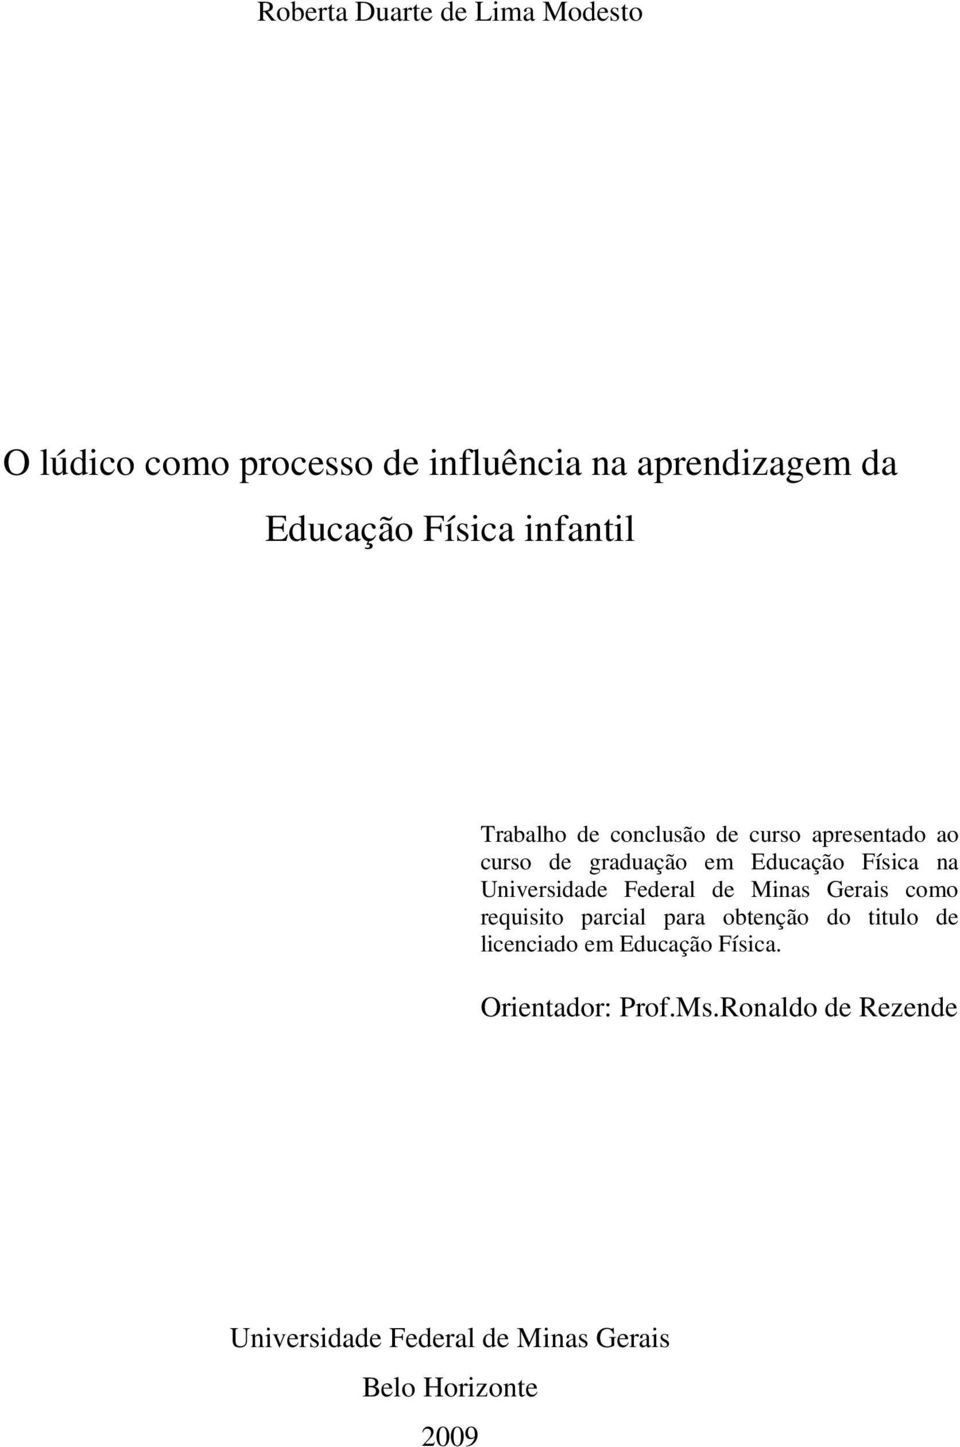 Universidade Federal de Minas Gerais como requisito parcial para obtenção do titulo de licenciado em